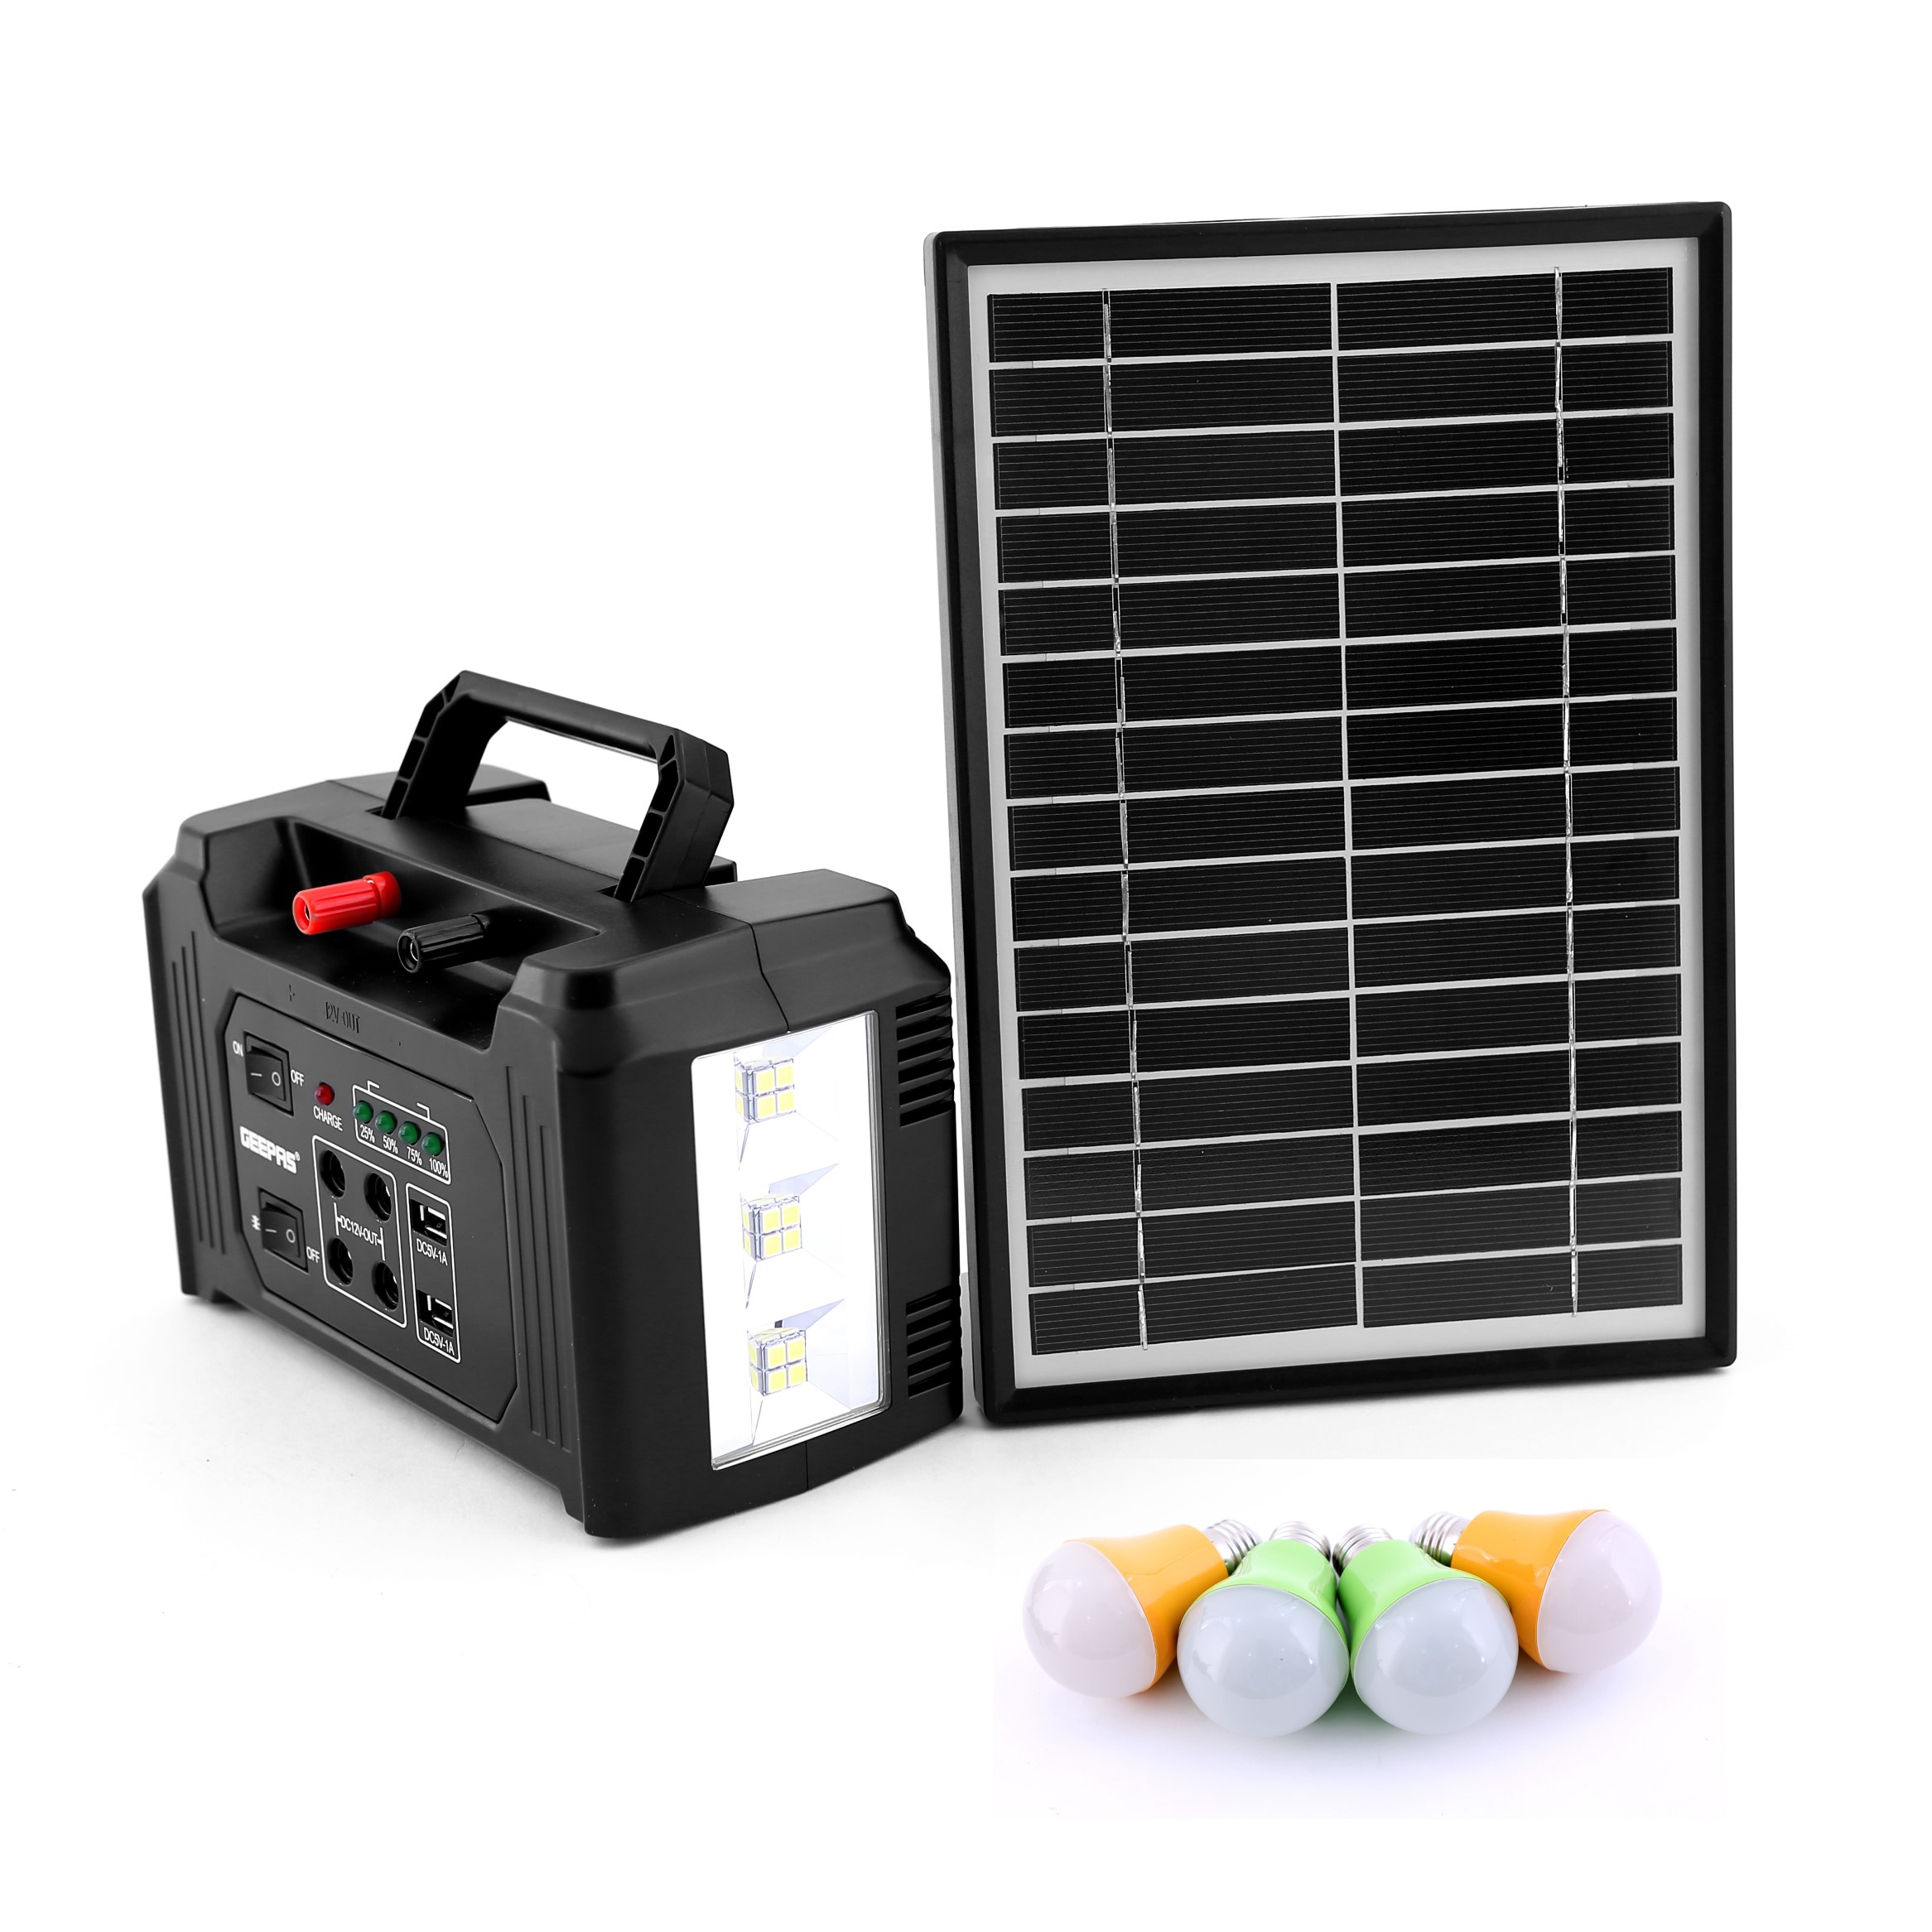 بطارية متنقلة للرحلات جيباس 7000 مللي Geepas Power Caster With Solar Panel